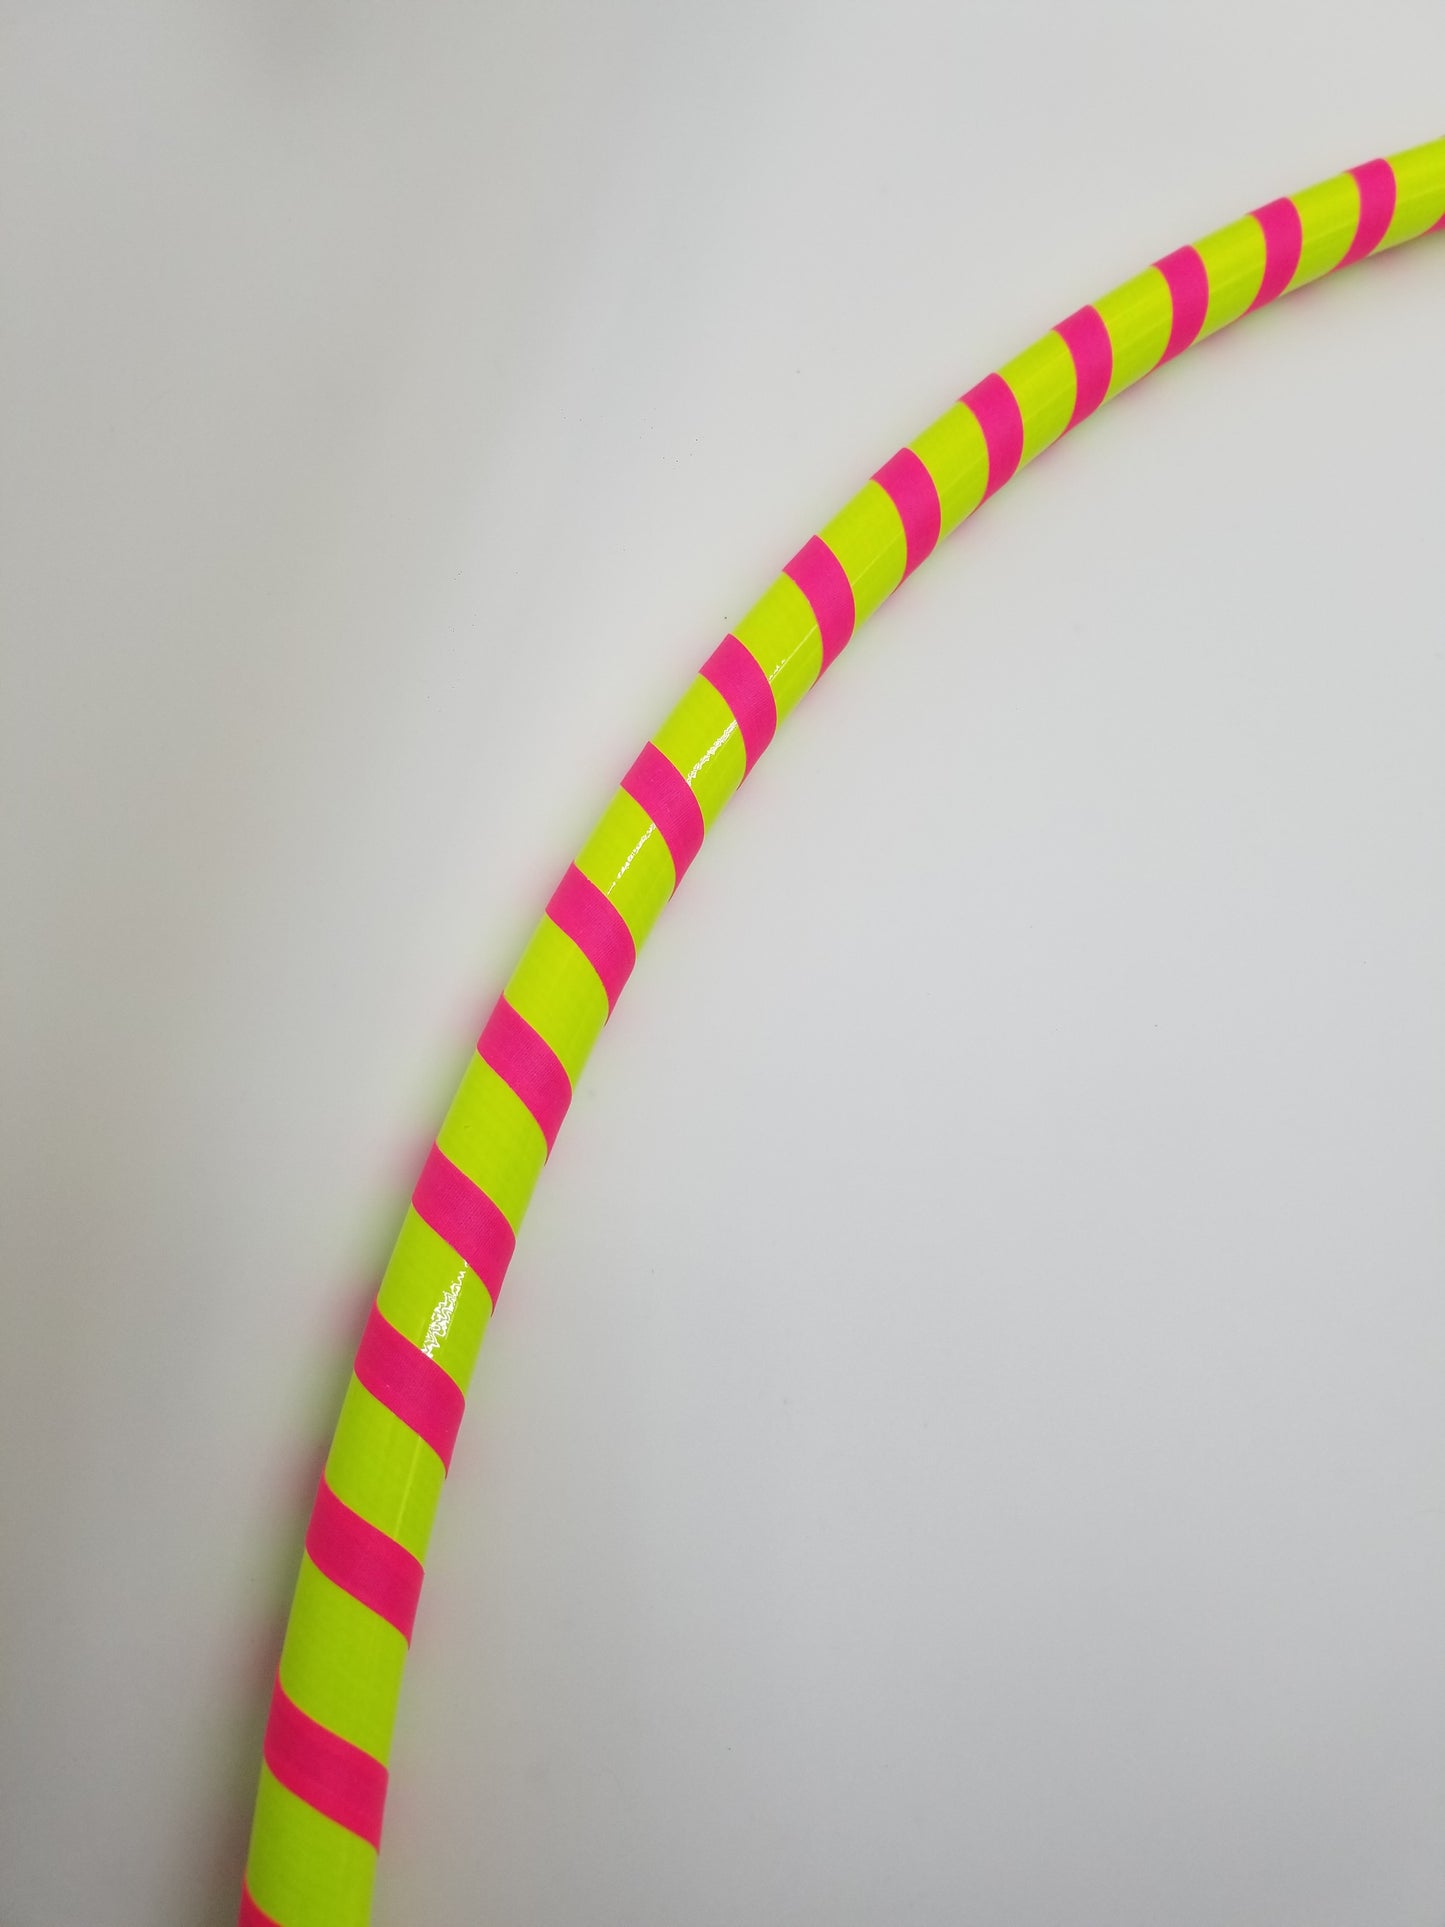 Yellow & Pink Gaffer Beginner HDPE Taped Hoop